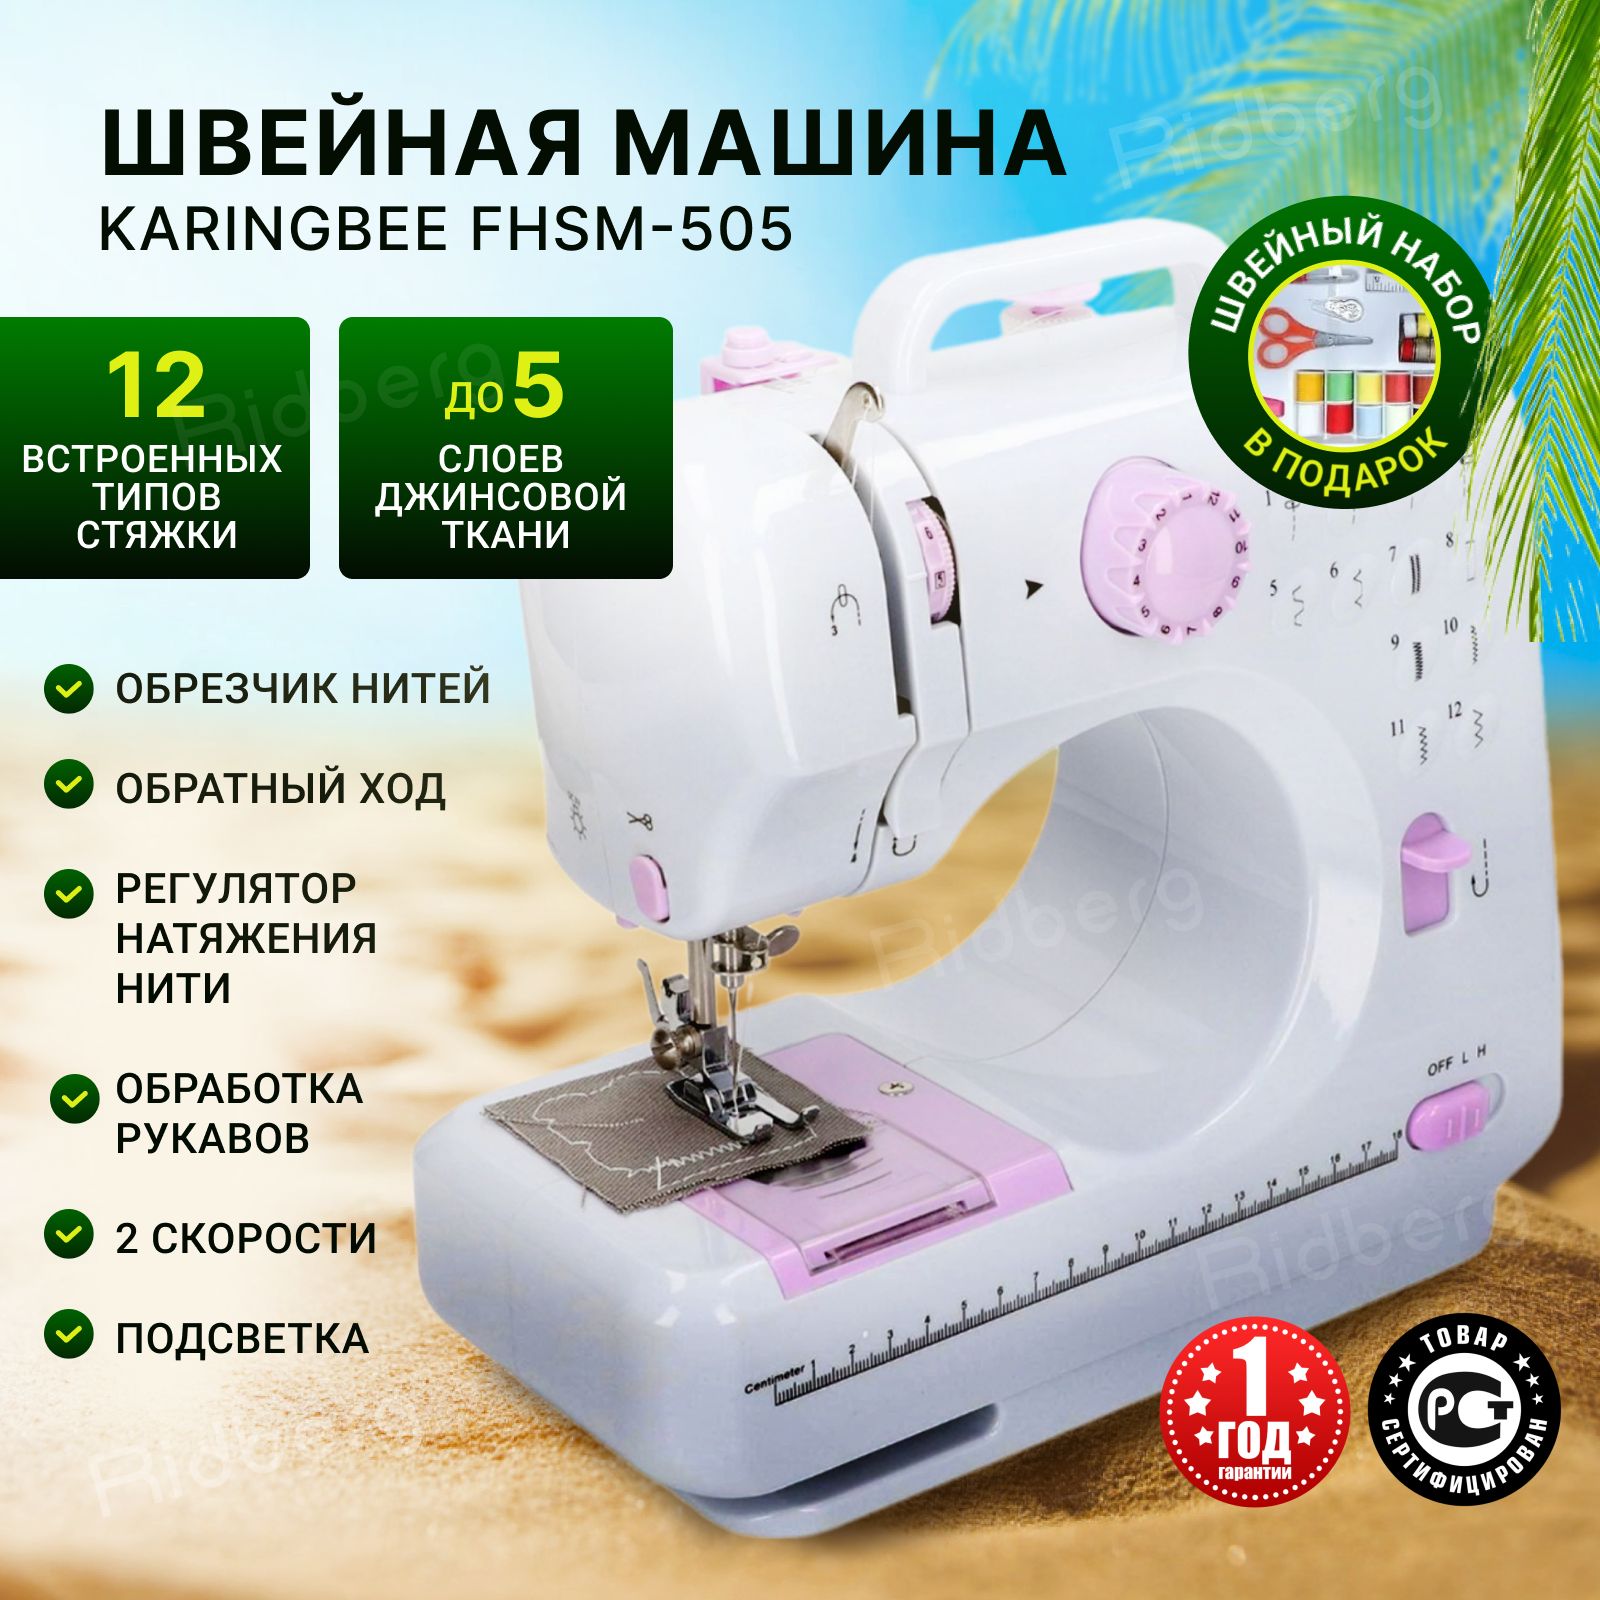 Швейная машинка электрическая KaringBee FHSM-505 (White) портативная, беспроводная / с педалью / для всех типов ткани / электронная / для дома